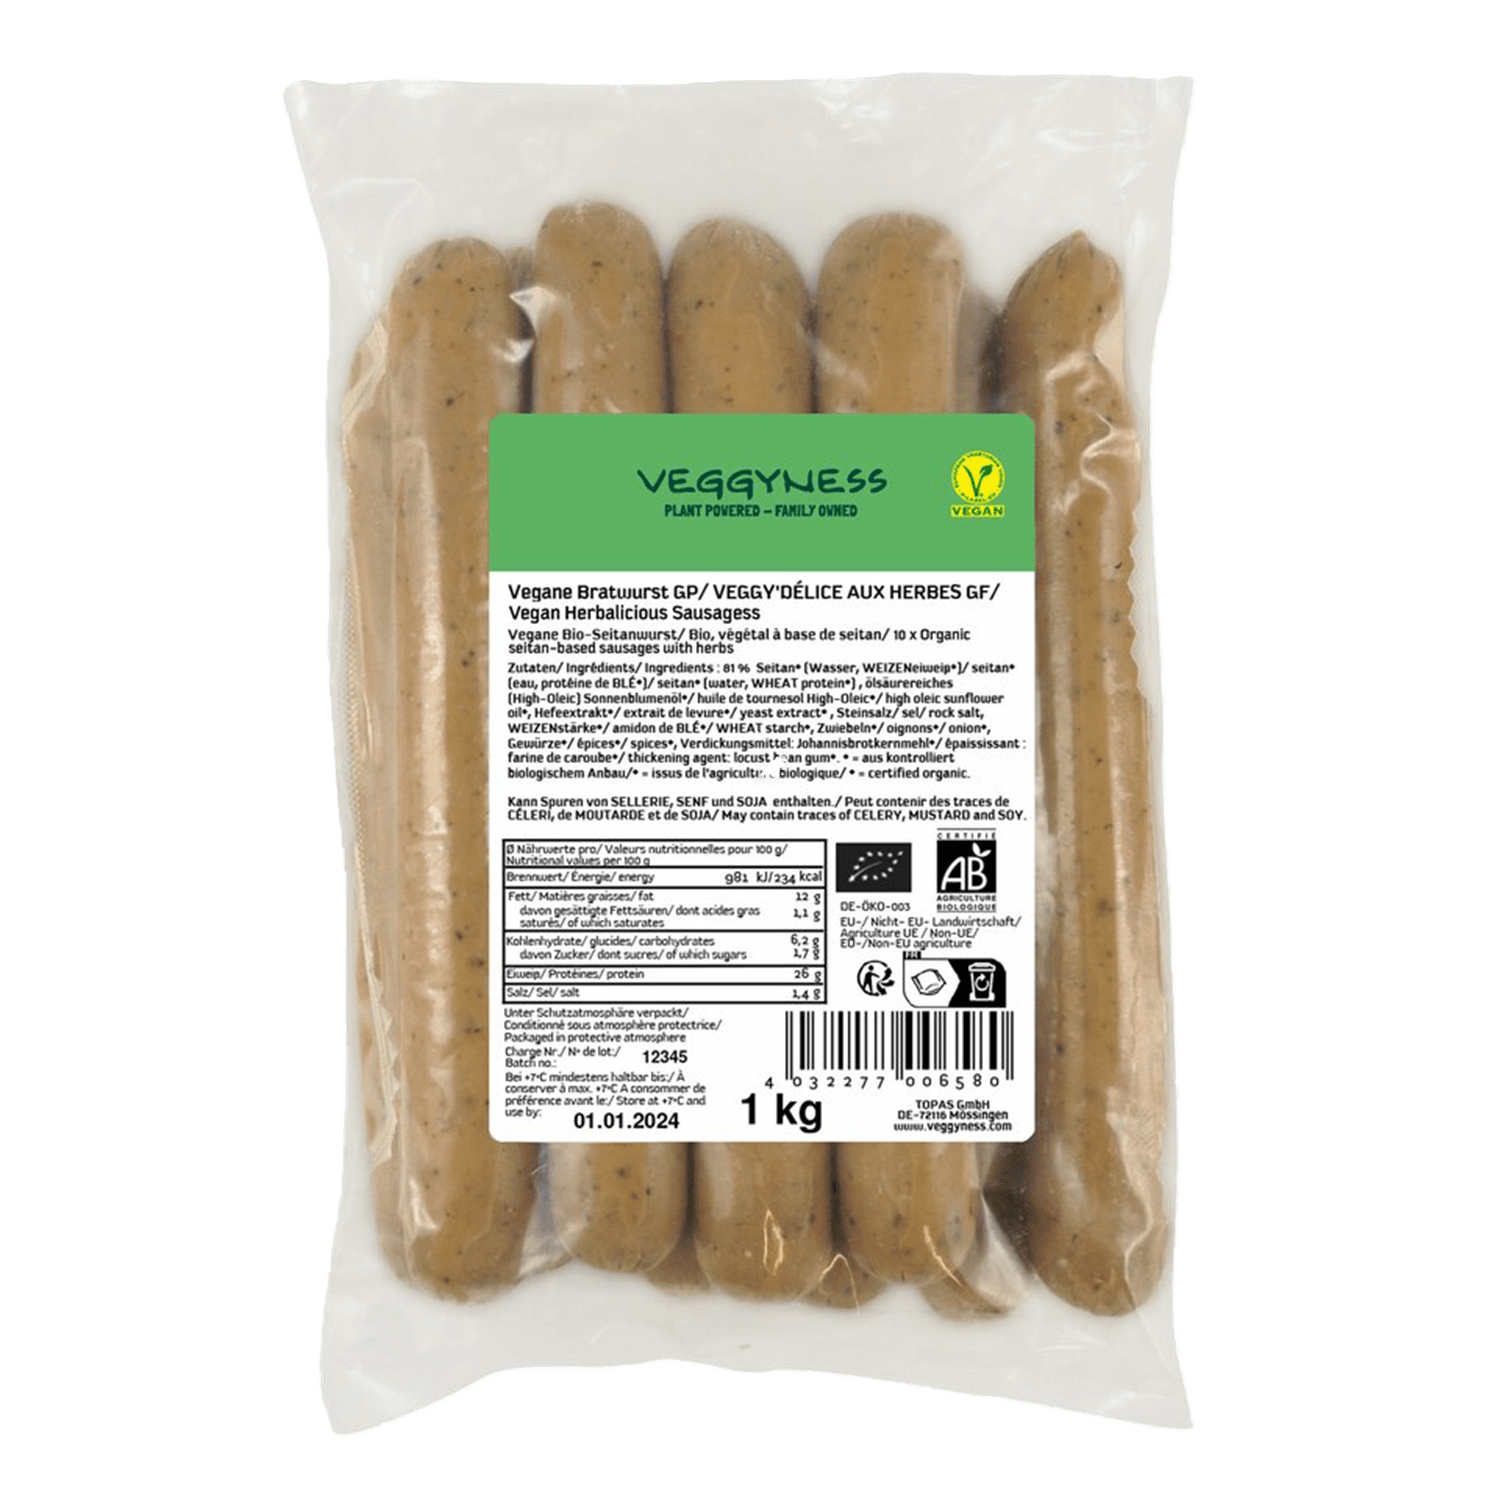 Vegan Sausage "Bratwurst", Organic, 1kg